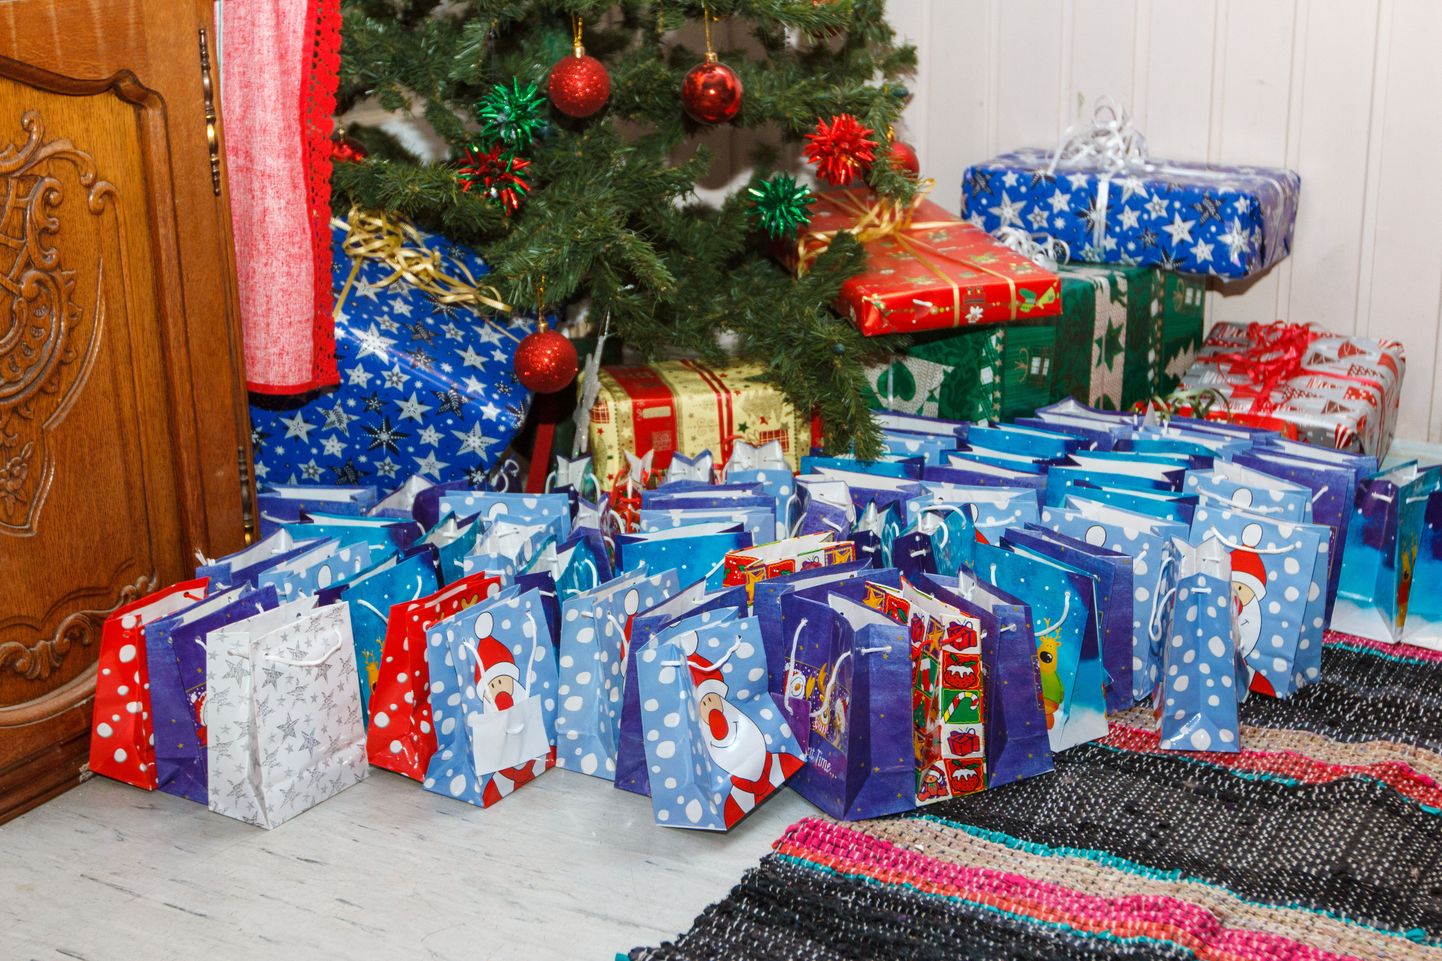 Kõik Valgamaa omavalitsused toovad jõulurõõmu kingipakkide kaudu nii lastele kui eakatele. Teele saadetakse kopsakatele kommipakkidele lisaks ka meepurke. Samuti korraldatakse  jõulu- ja aastalõpupidusid.